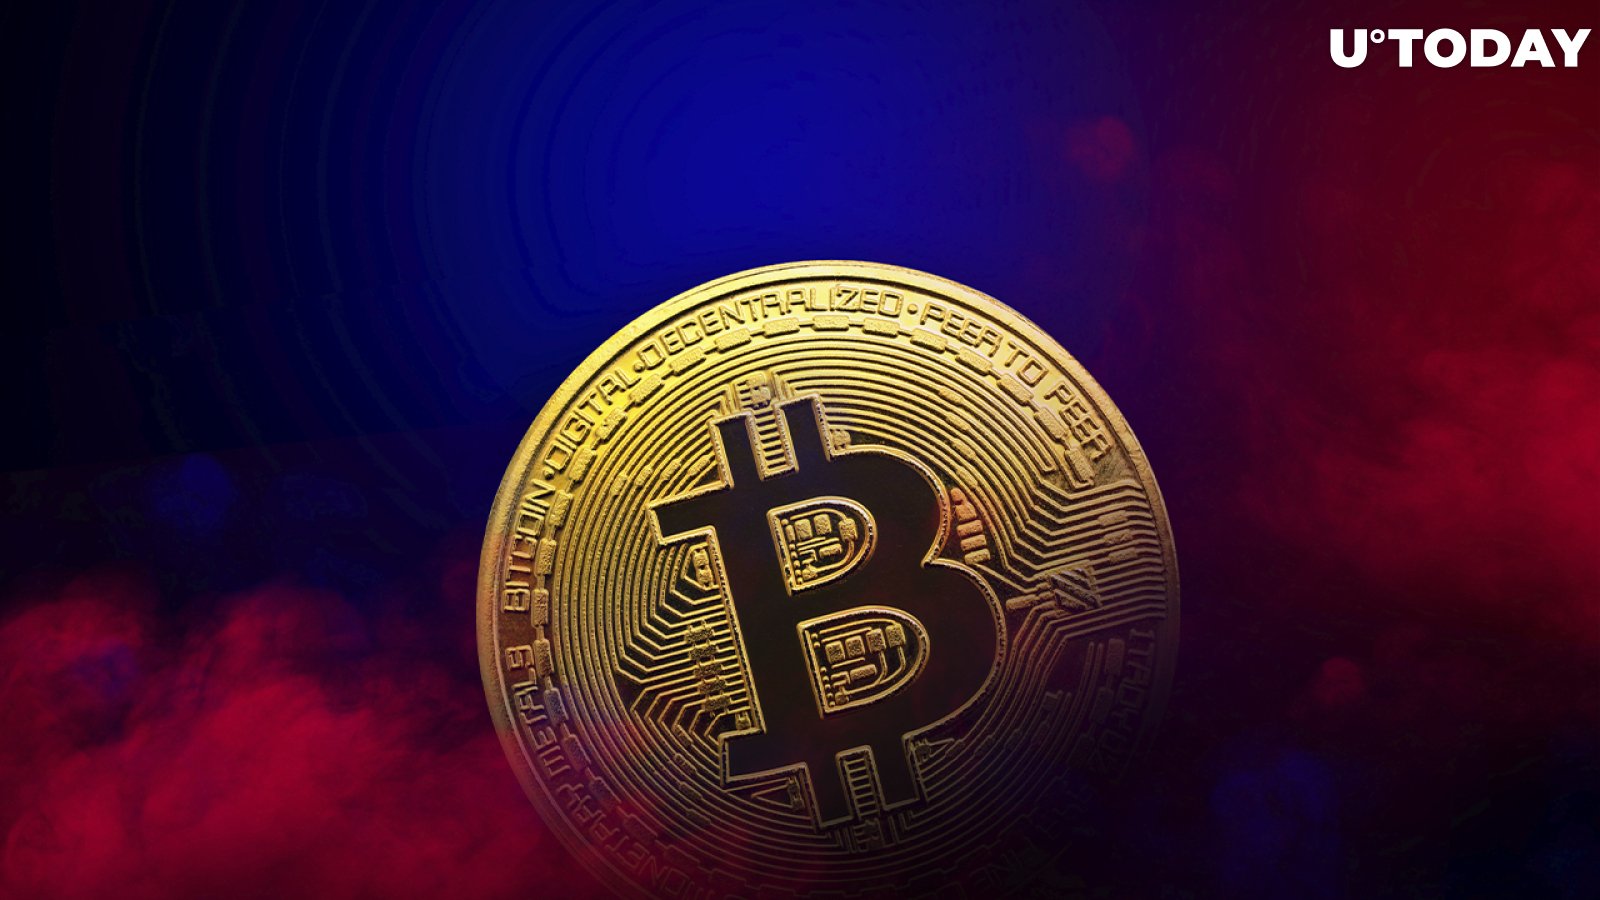 Cardano Creator Says Bitcoin Didn’t Go Far Enough